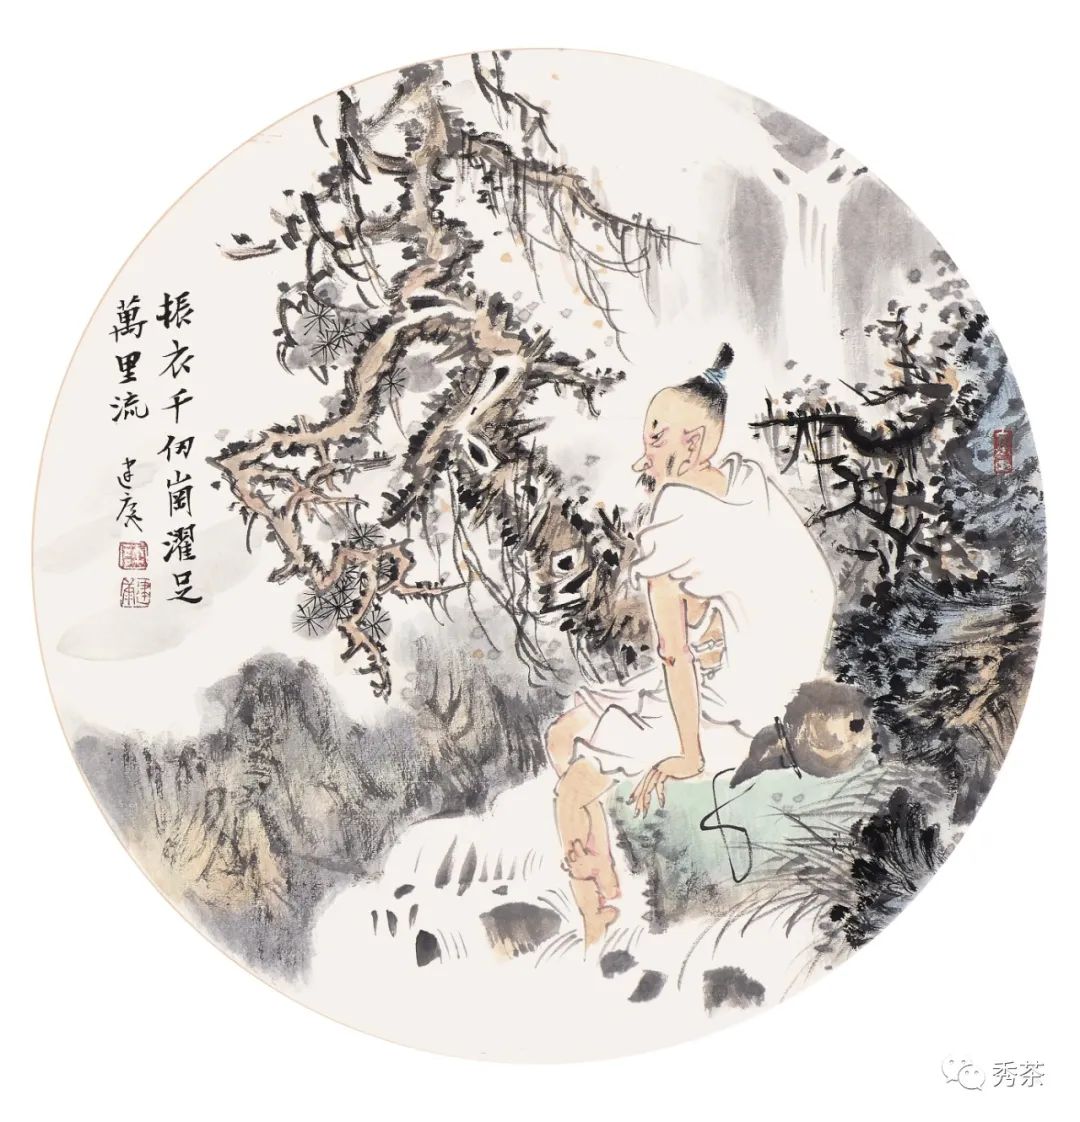 许建康禅意人物画精品展6月12日将在南京开幕,展现正清和雅之美